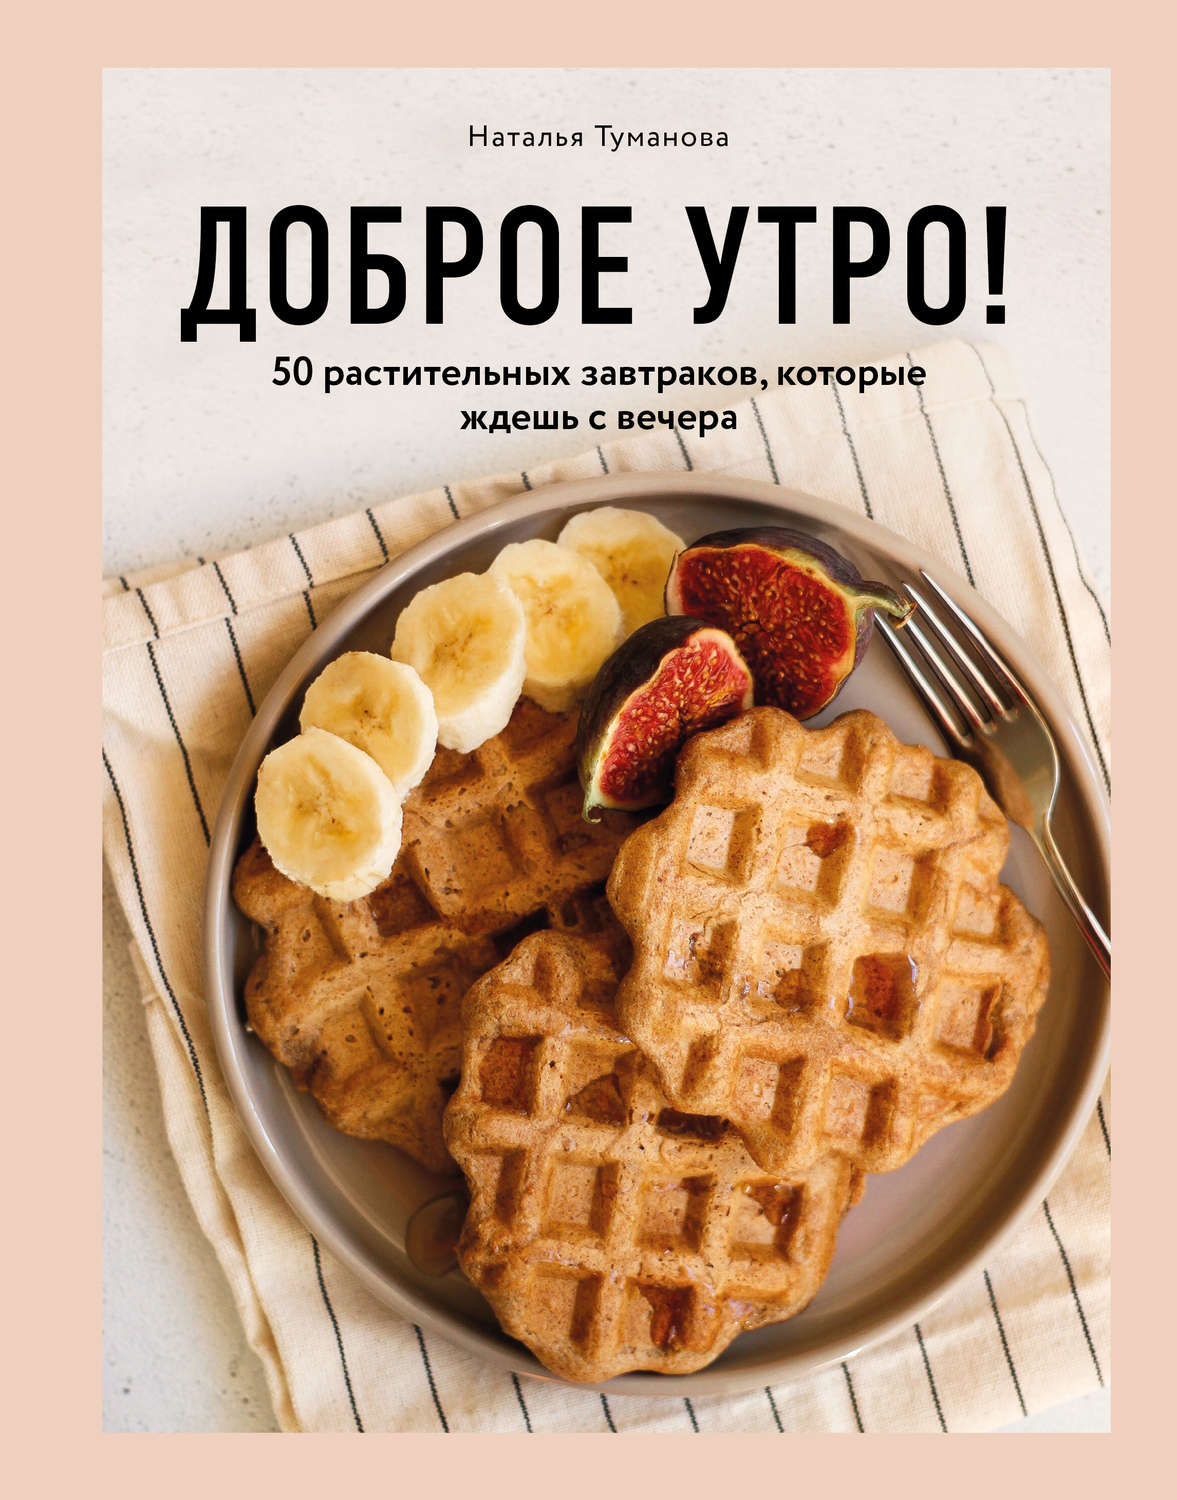 Отзывы о книге «Доброе утро! 50 растительных завтраков, которые ждешь с  вечера», рецензии на книгу , рейтинг в библиотеке Литрес